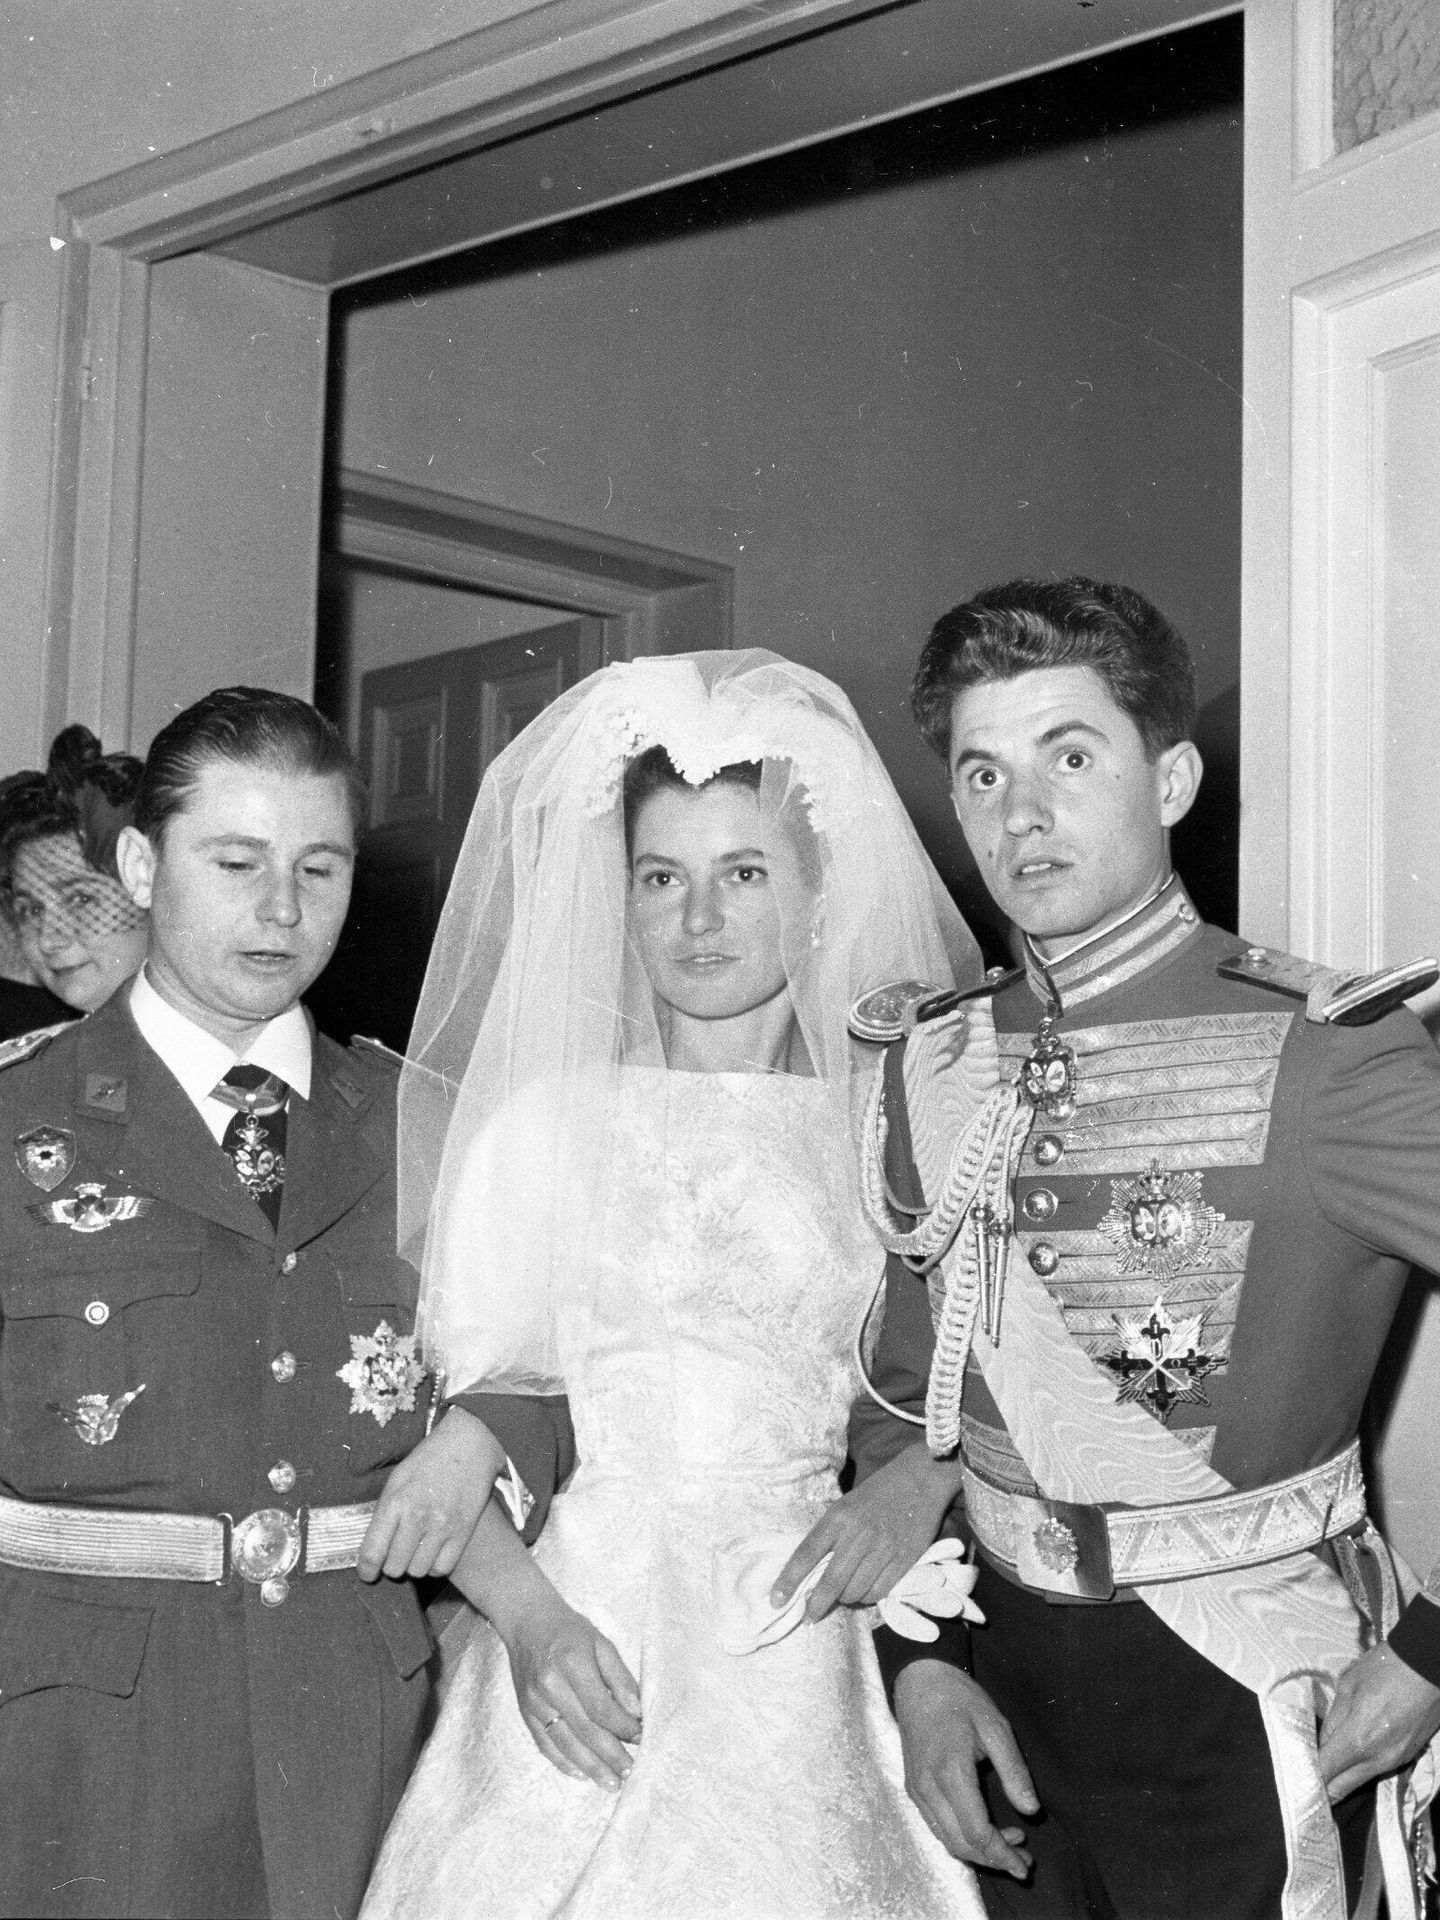 La boda entre Teresa de Borbón-Dos Sicilias y Borbón-Parma con Íñigo Moreno y de Arteaga en abril de 1961. (Europa Press)